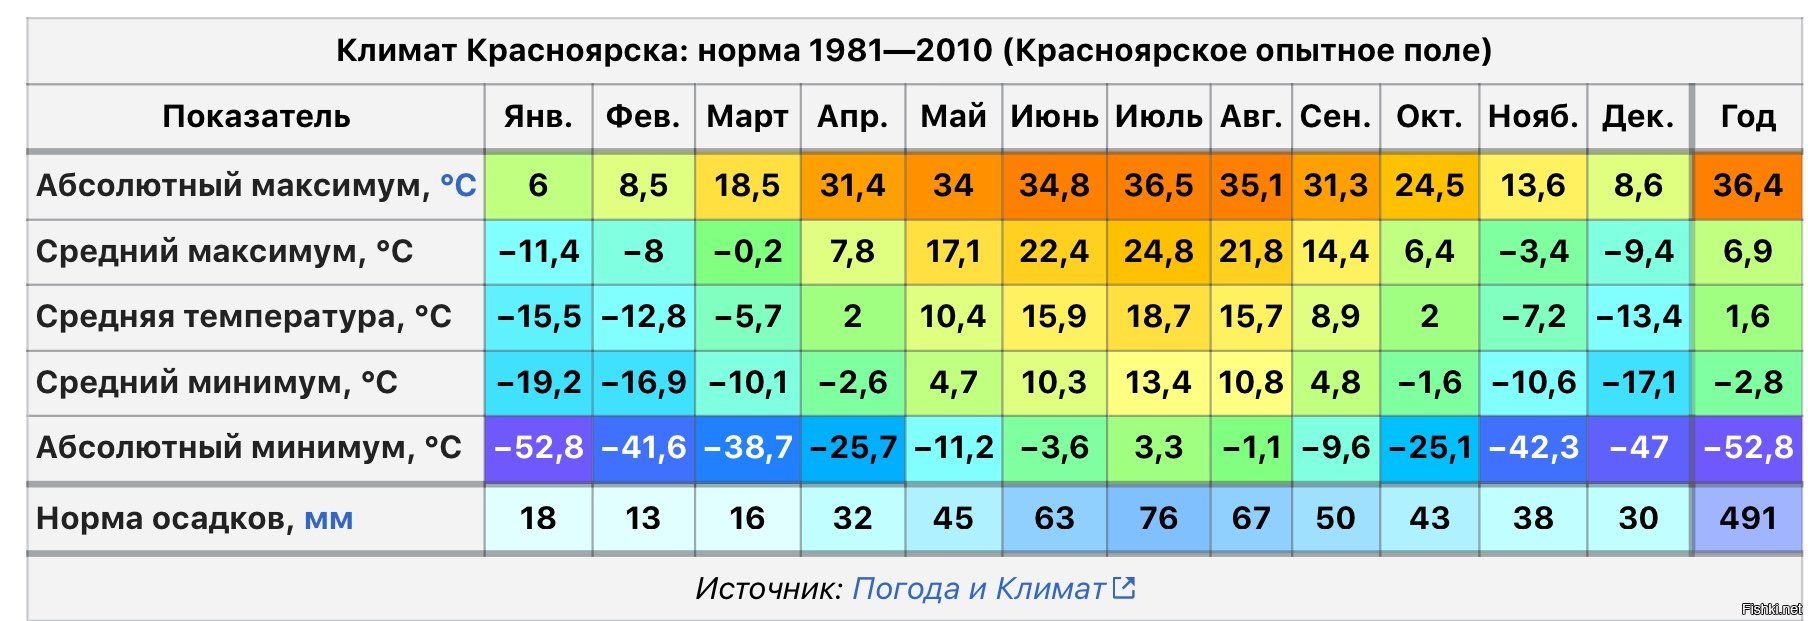 Средняя температура воздуха в январе тула. Средняя температура в Красноярске по месяцам. Средняя температура зимой во Владивостоке. Средняя температура в Петропавловске Камчатском в январе и июле. Среднемесячная температура во Владивостоке.